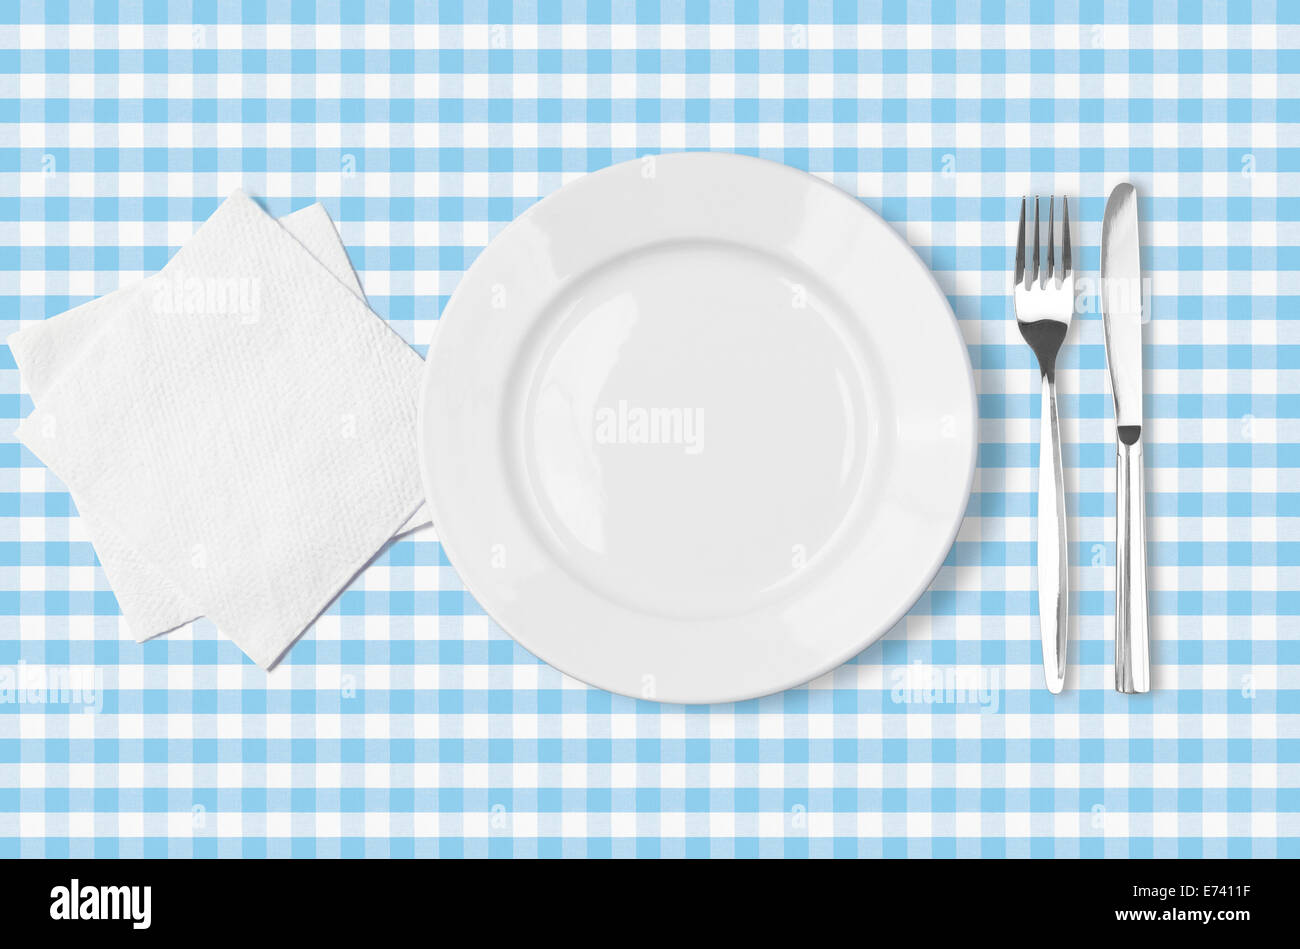 Assiette, fourchette, couteau et de serviette en tissu bleu nappe Vue de dessus vérifié Banque D'Images